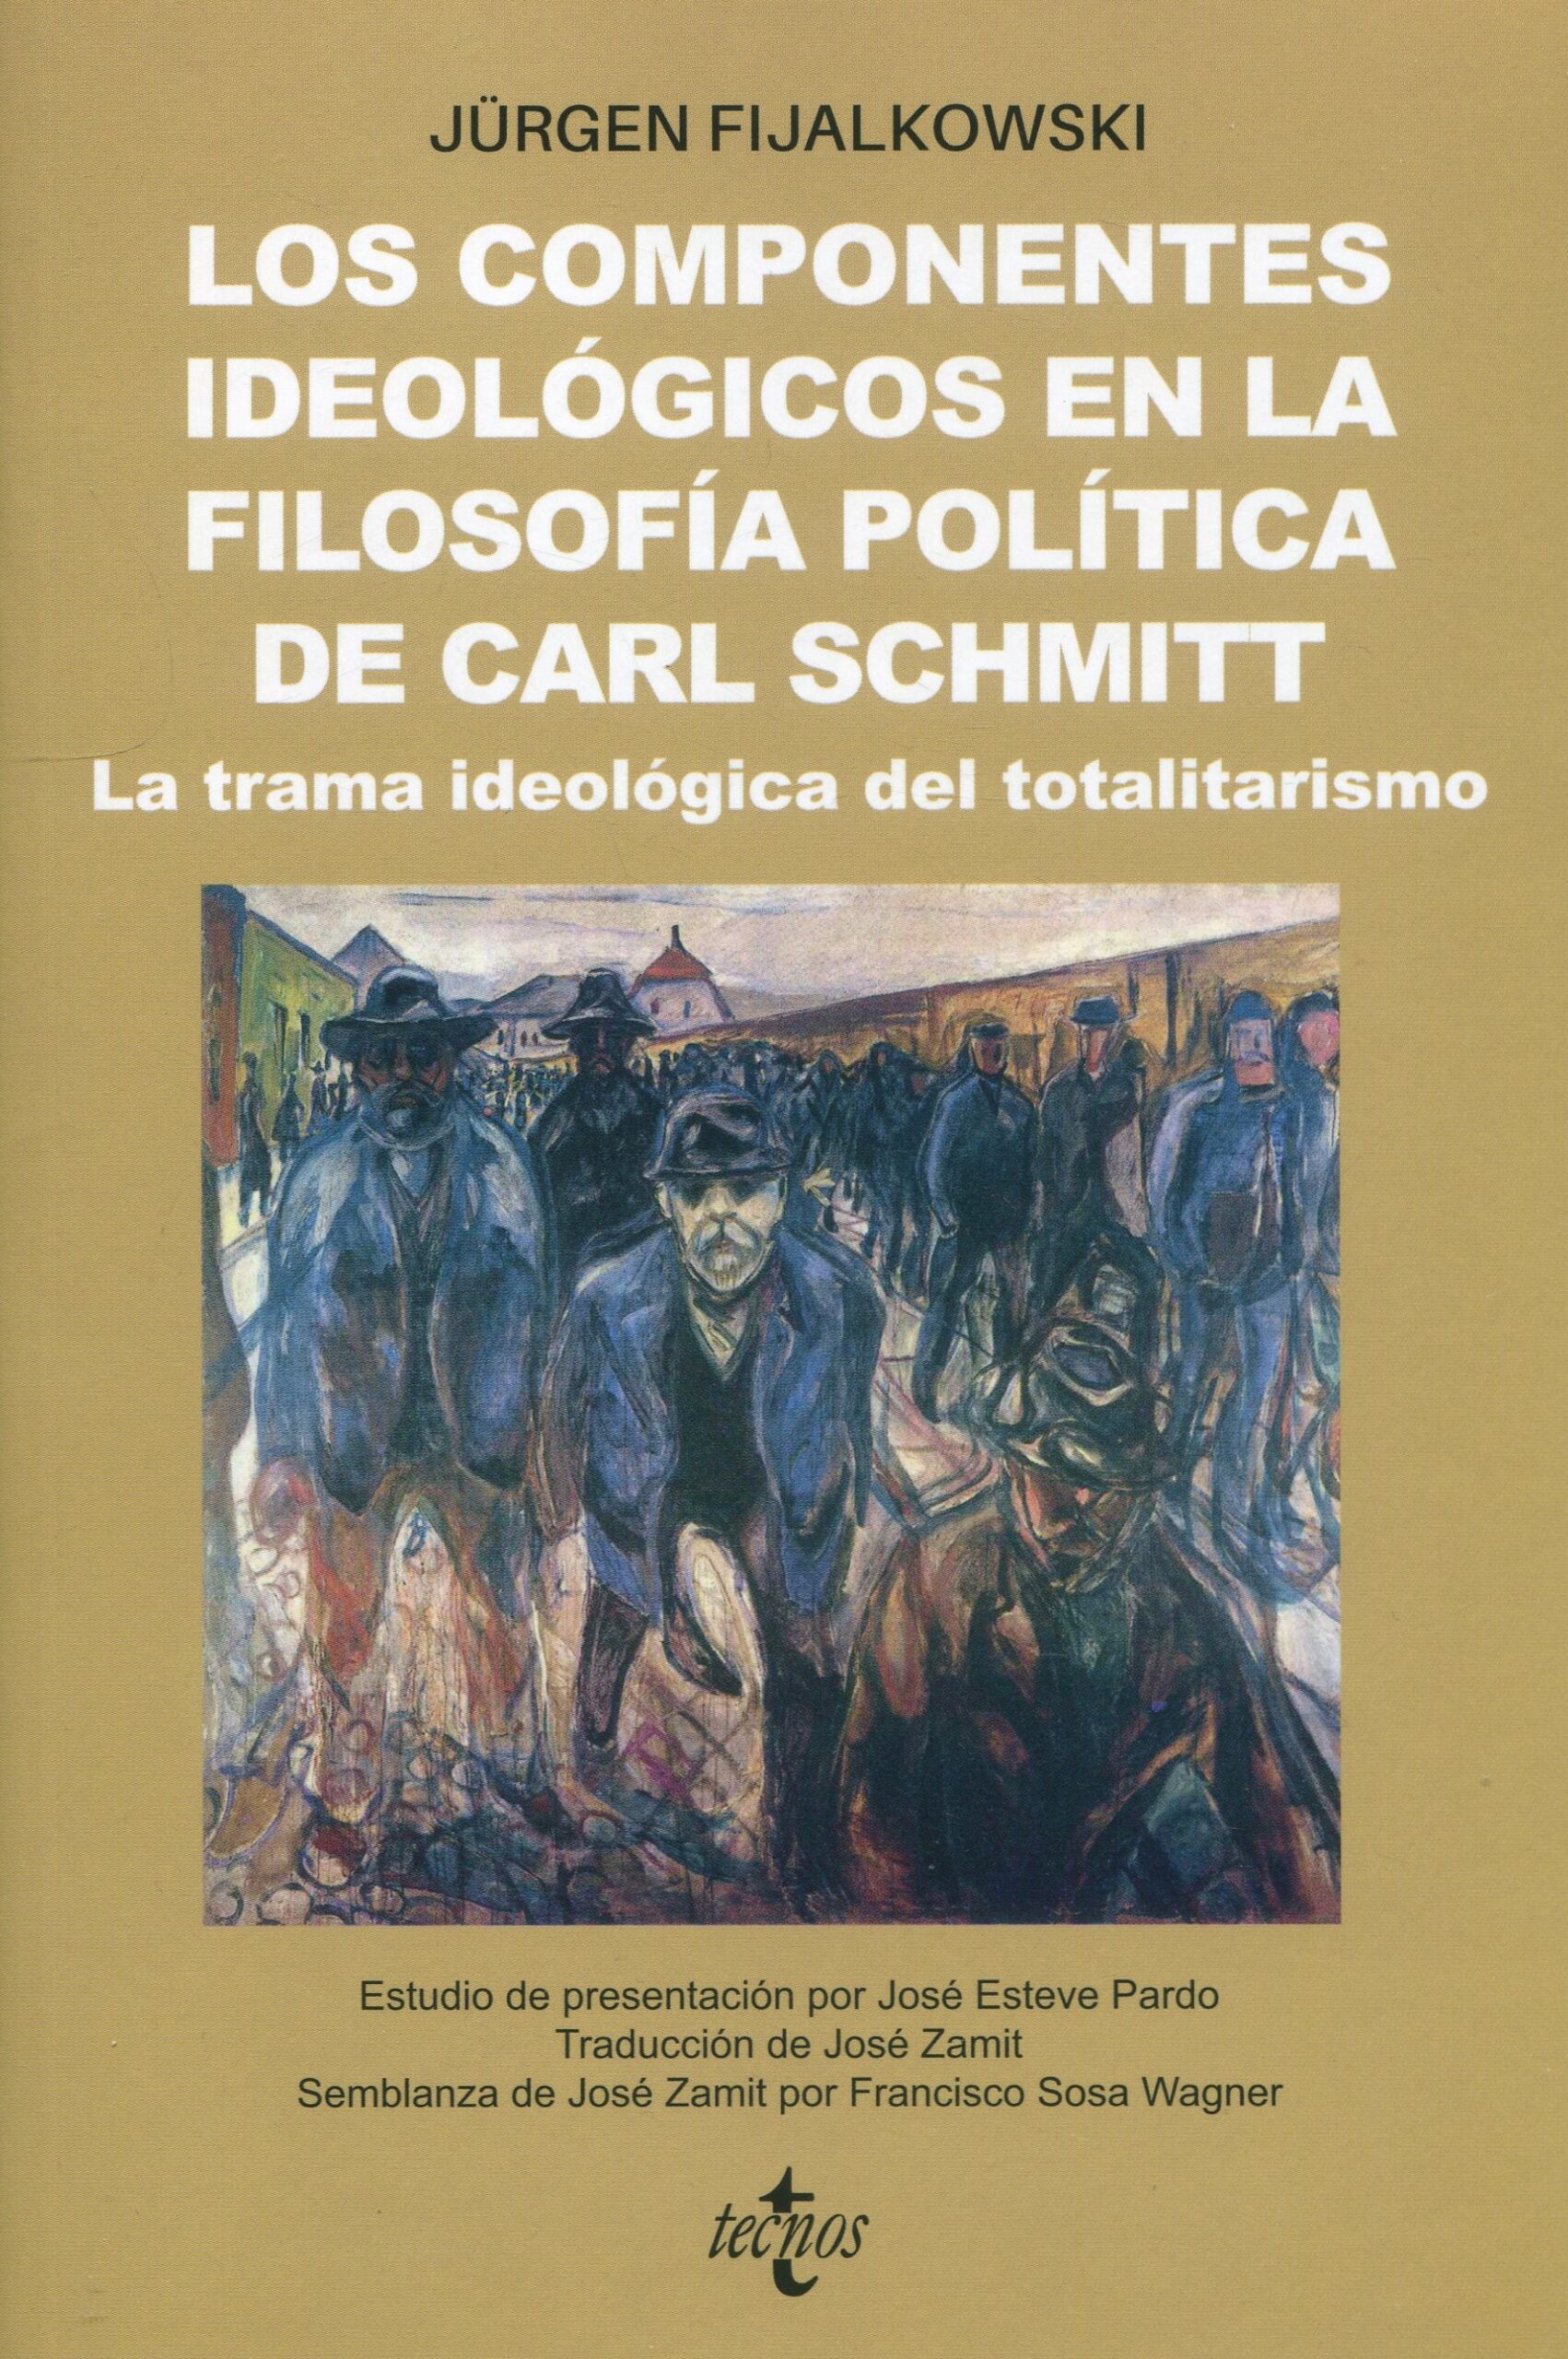 Componentes ideológicos en filosofía política de Carl Schmitt.9788430986620